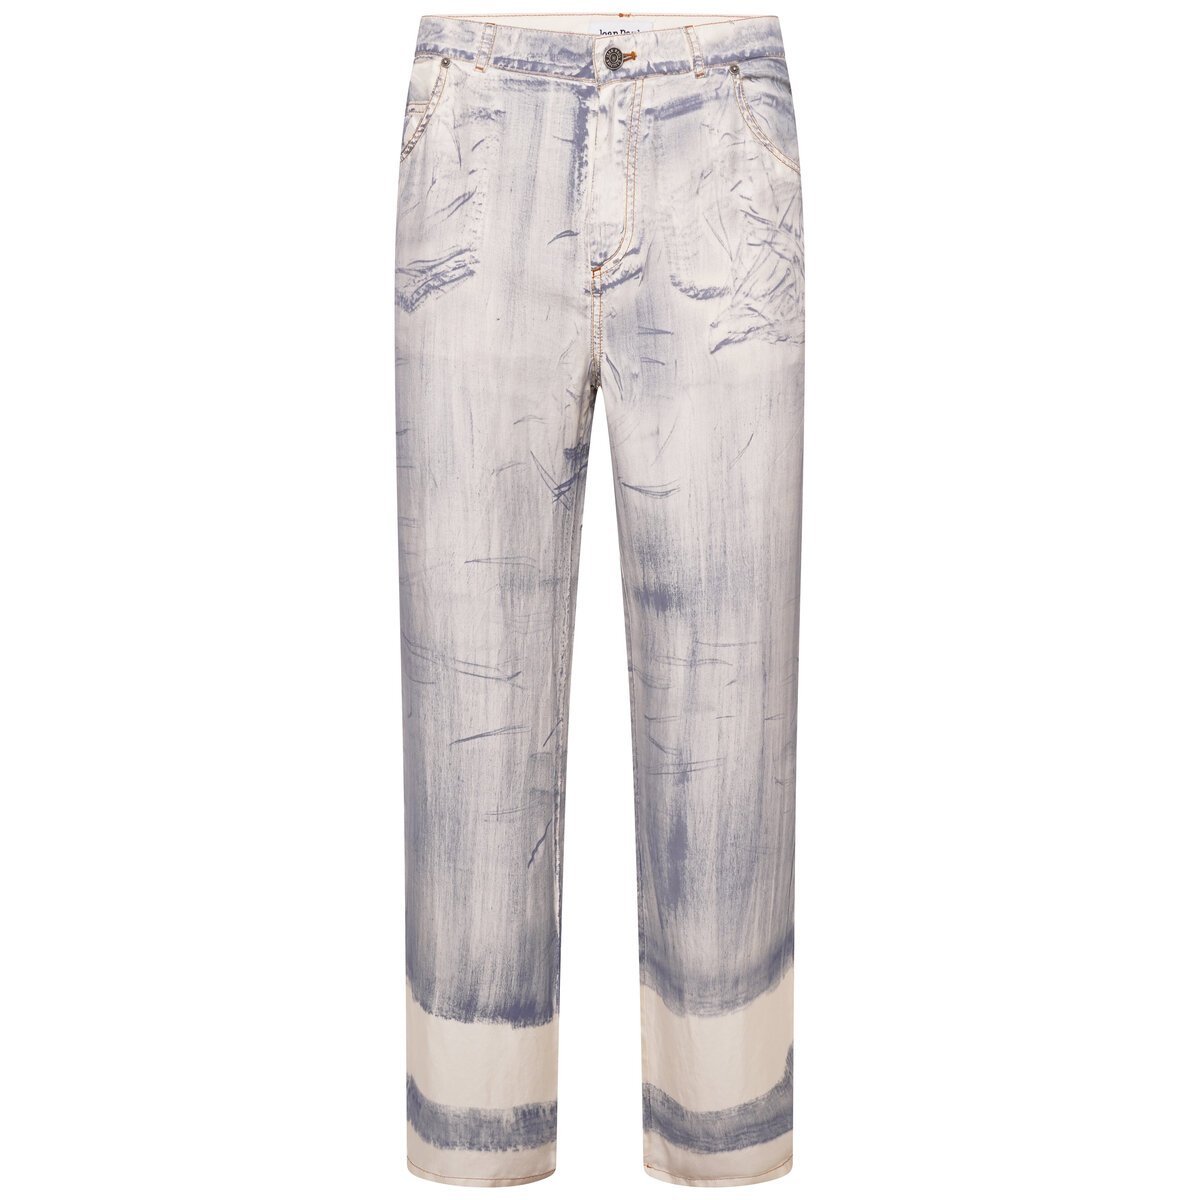 Silk Low Waist Jean Effect Paint Trousers 42 Ecru Blue